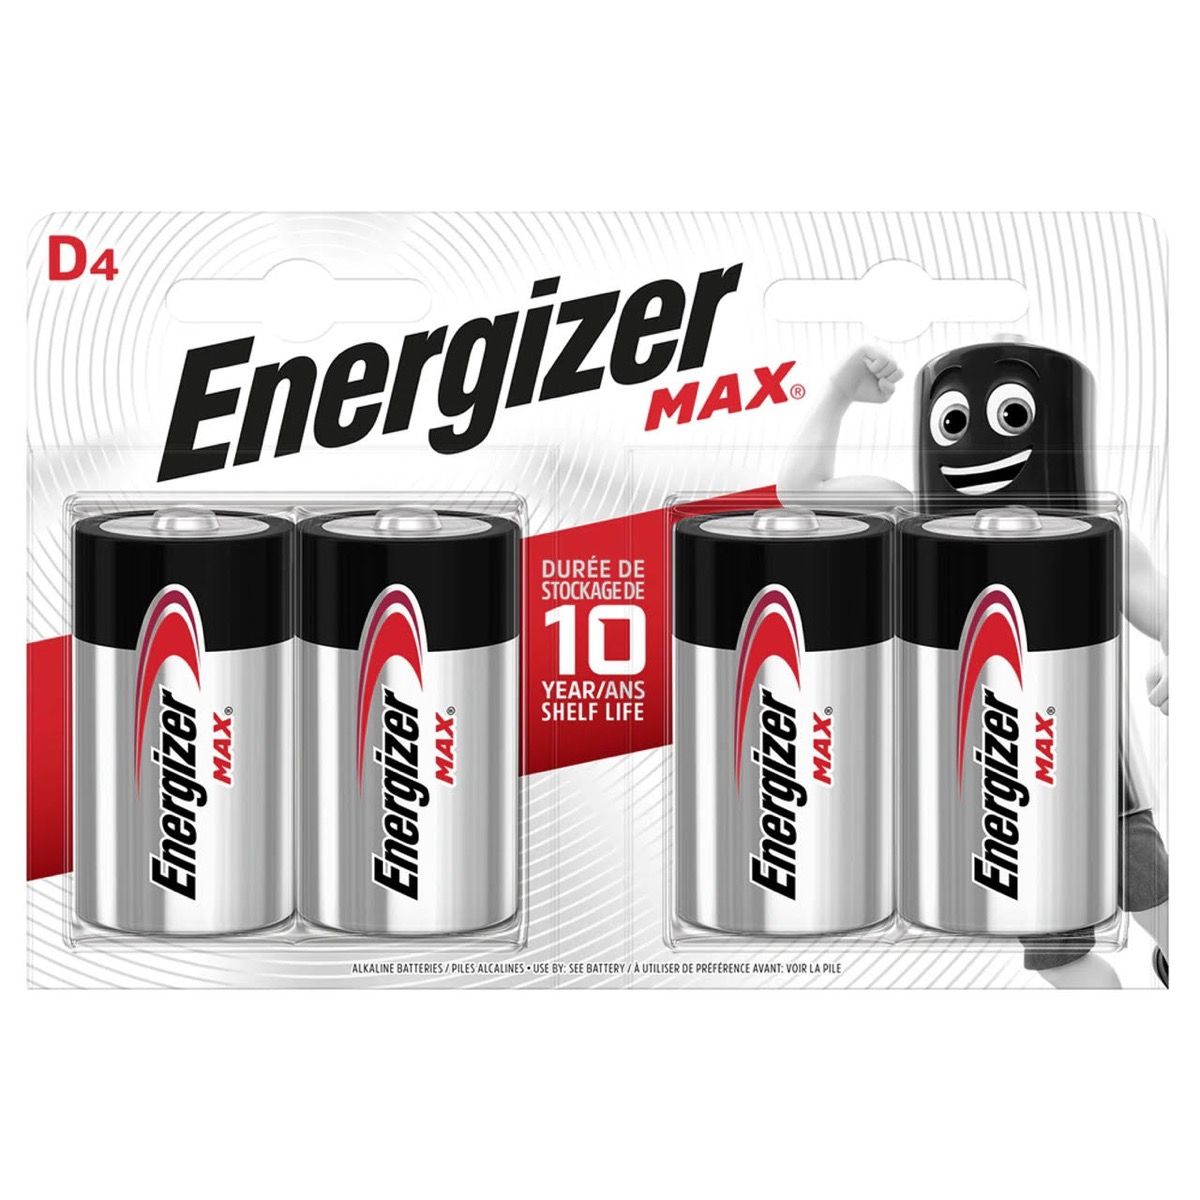 Energizer Max D LR20 Alkaline Batteries – 4 Pack - Refurbished Pristine